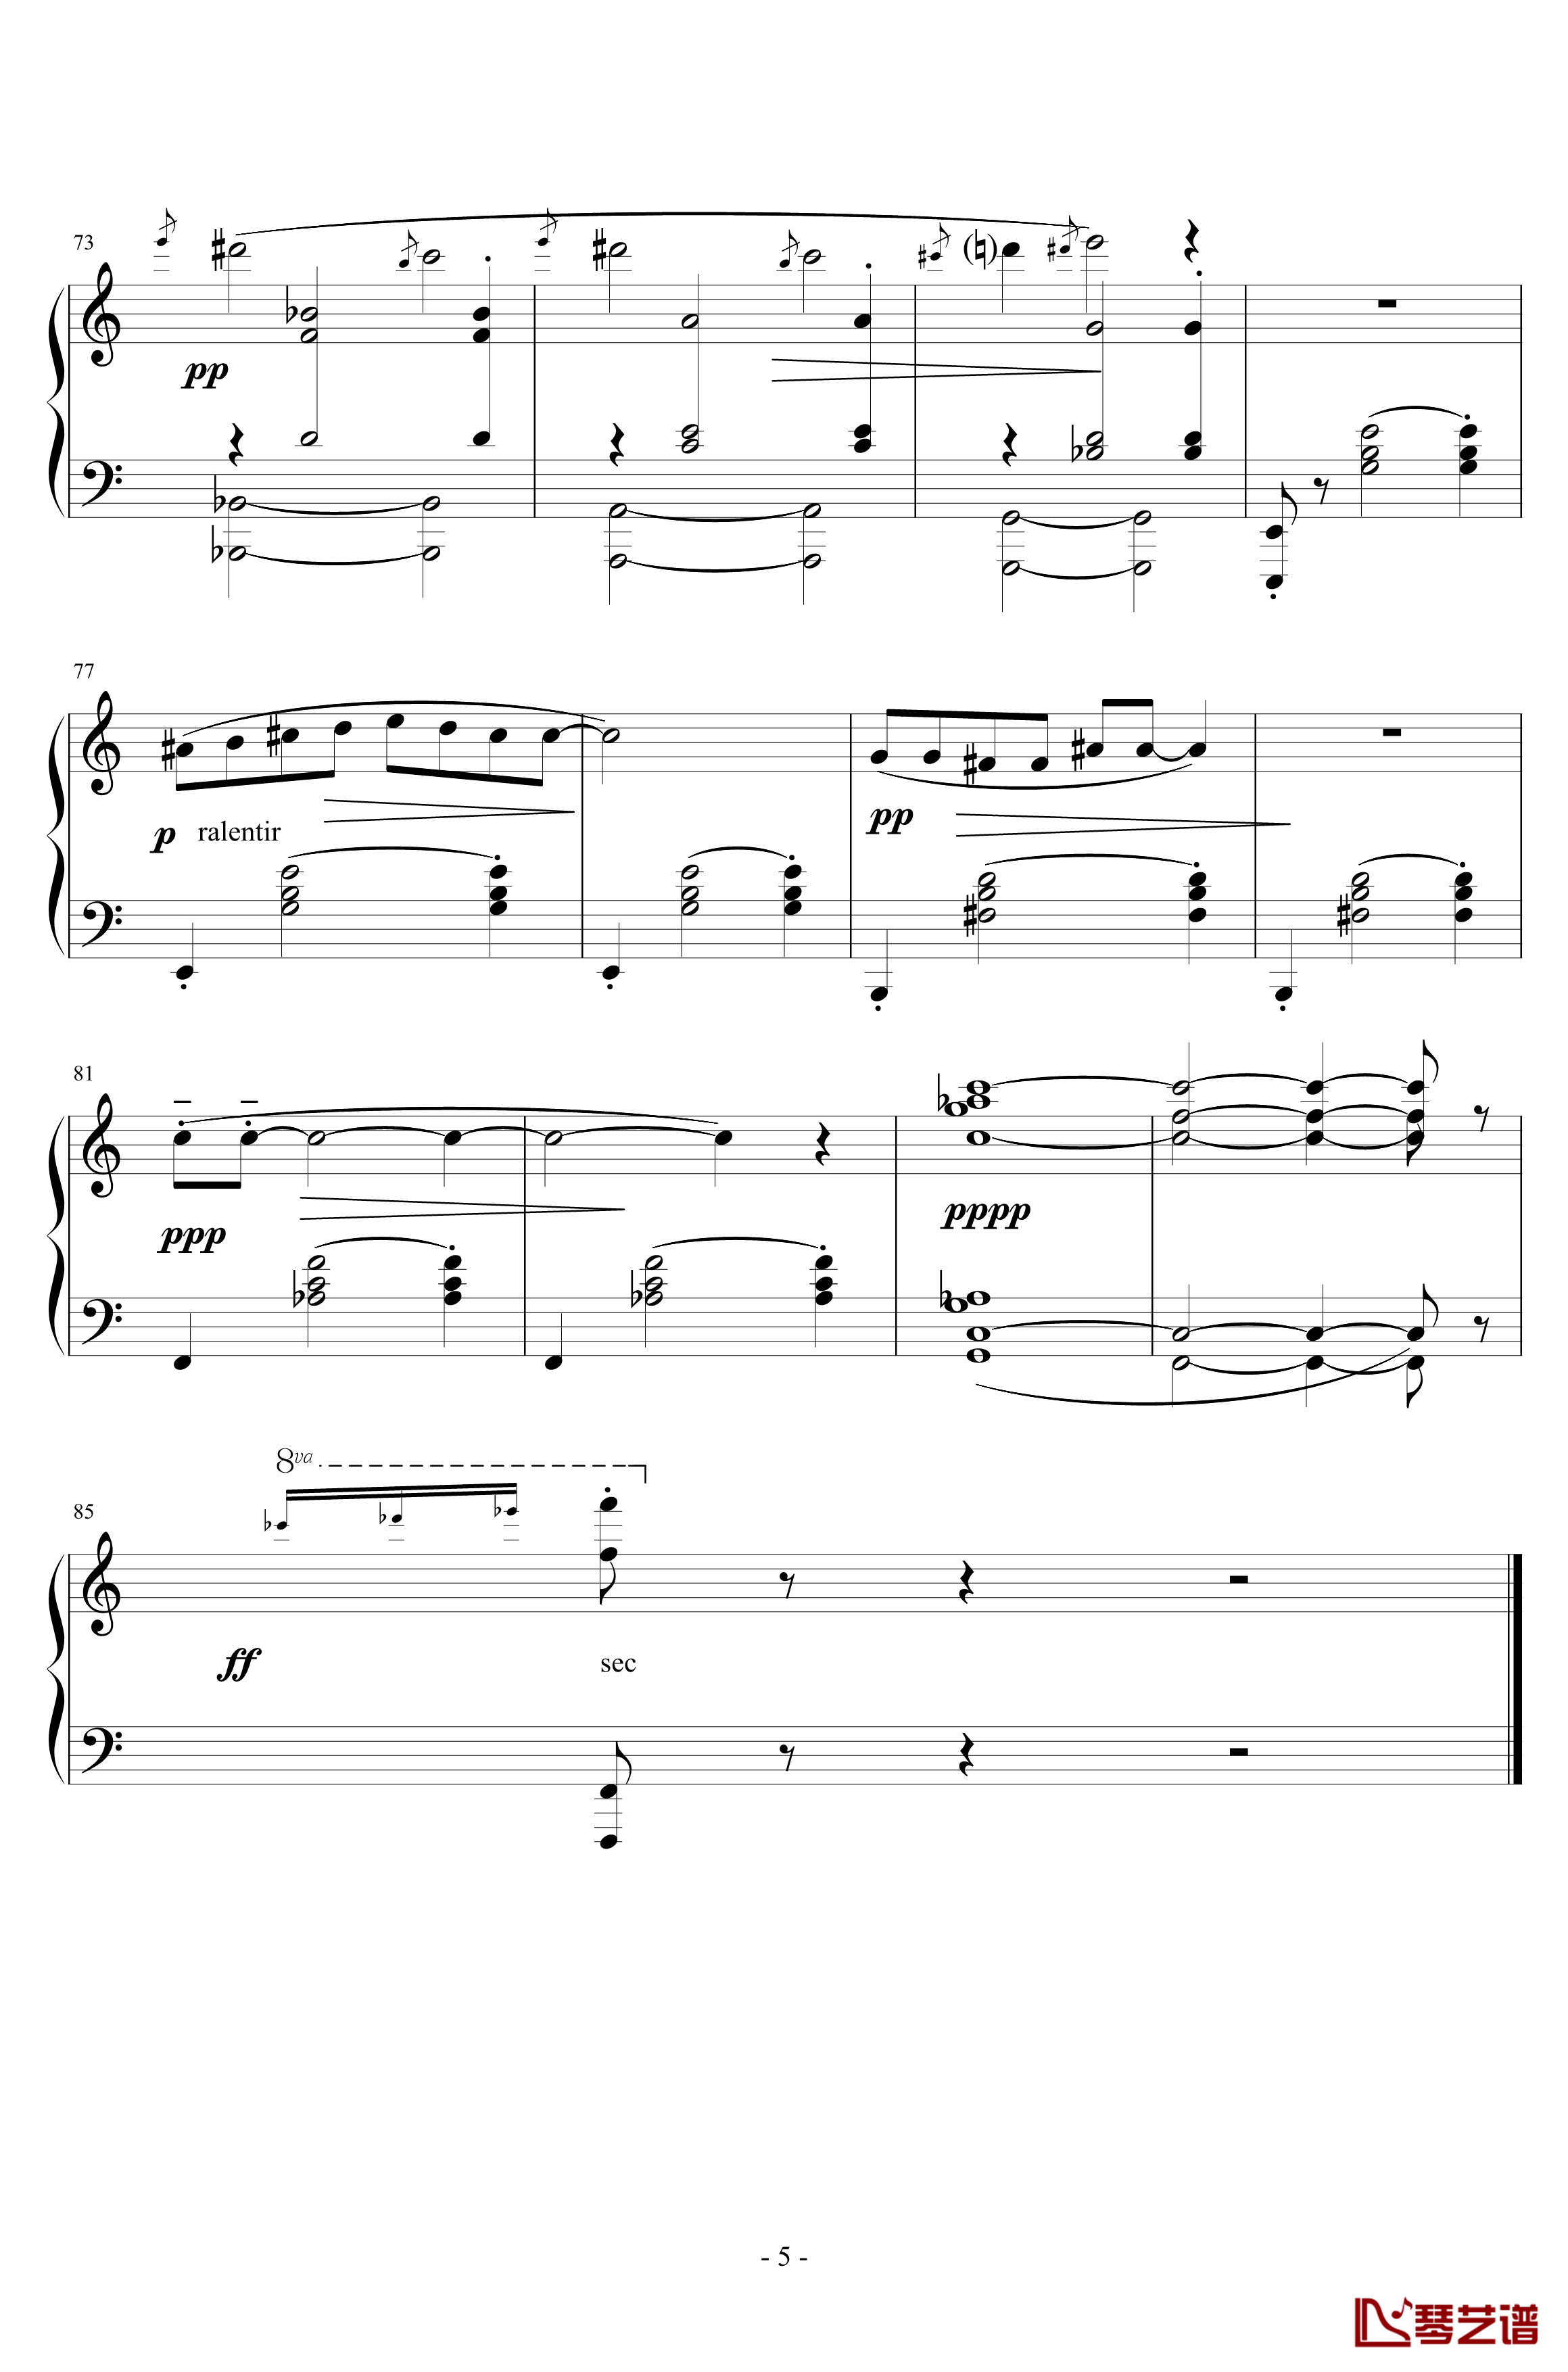 三首梨形小品钢琴谱-序奏-说话在先-沙拉萨蒂-萨蒂5